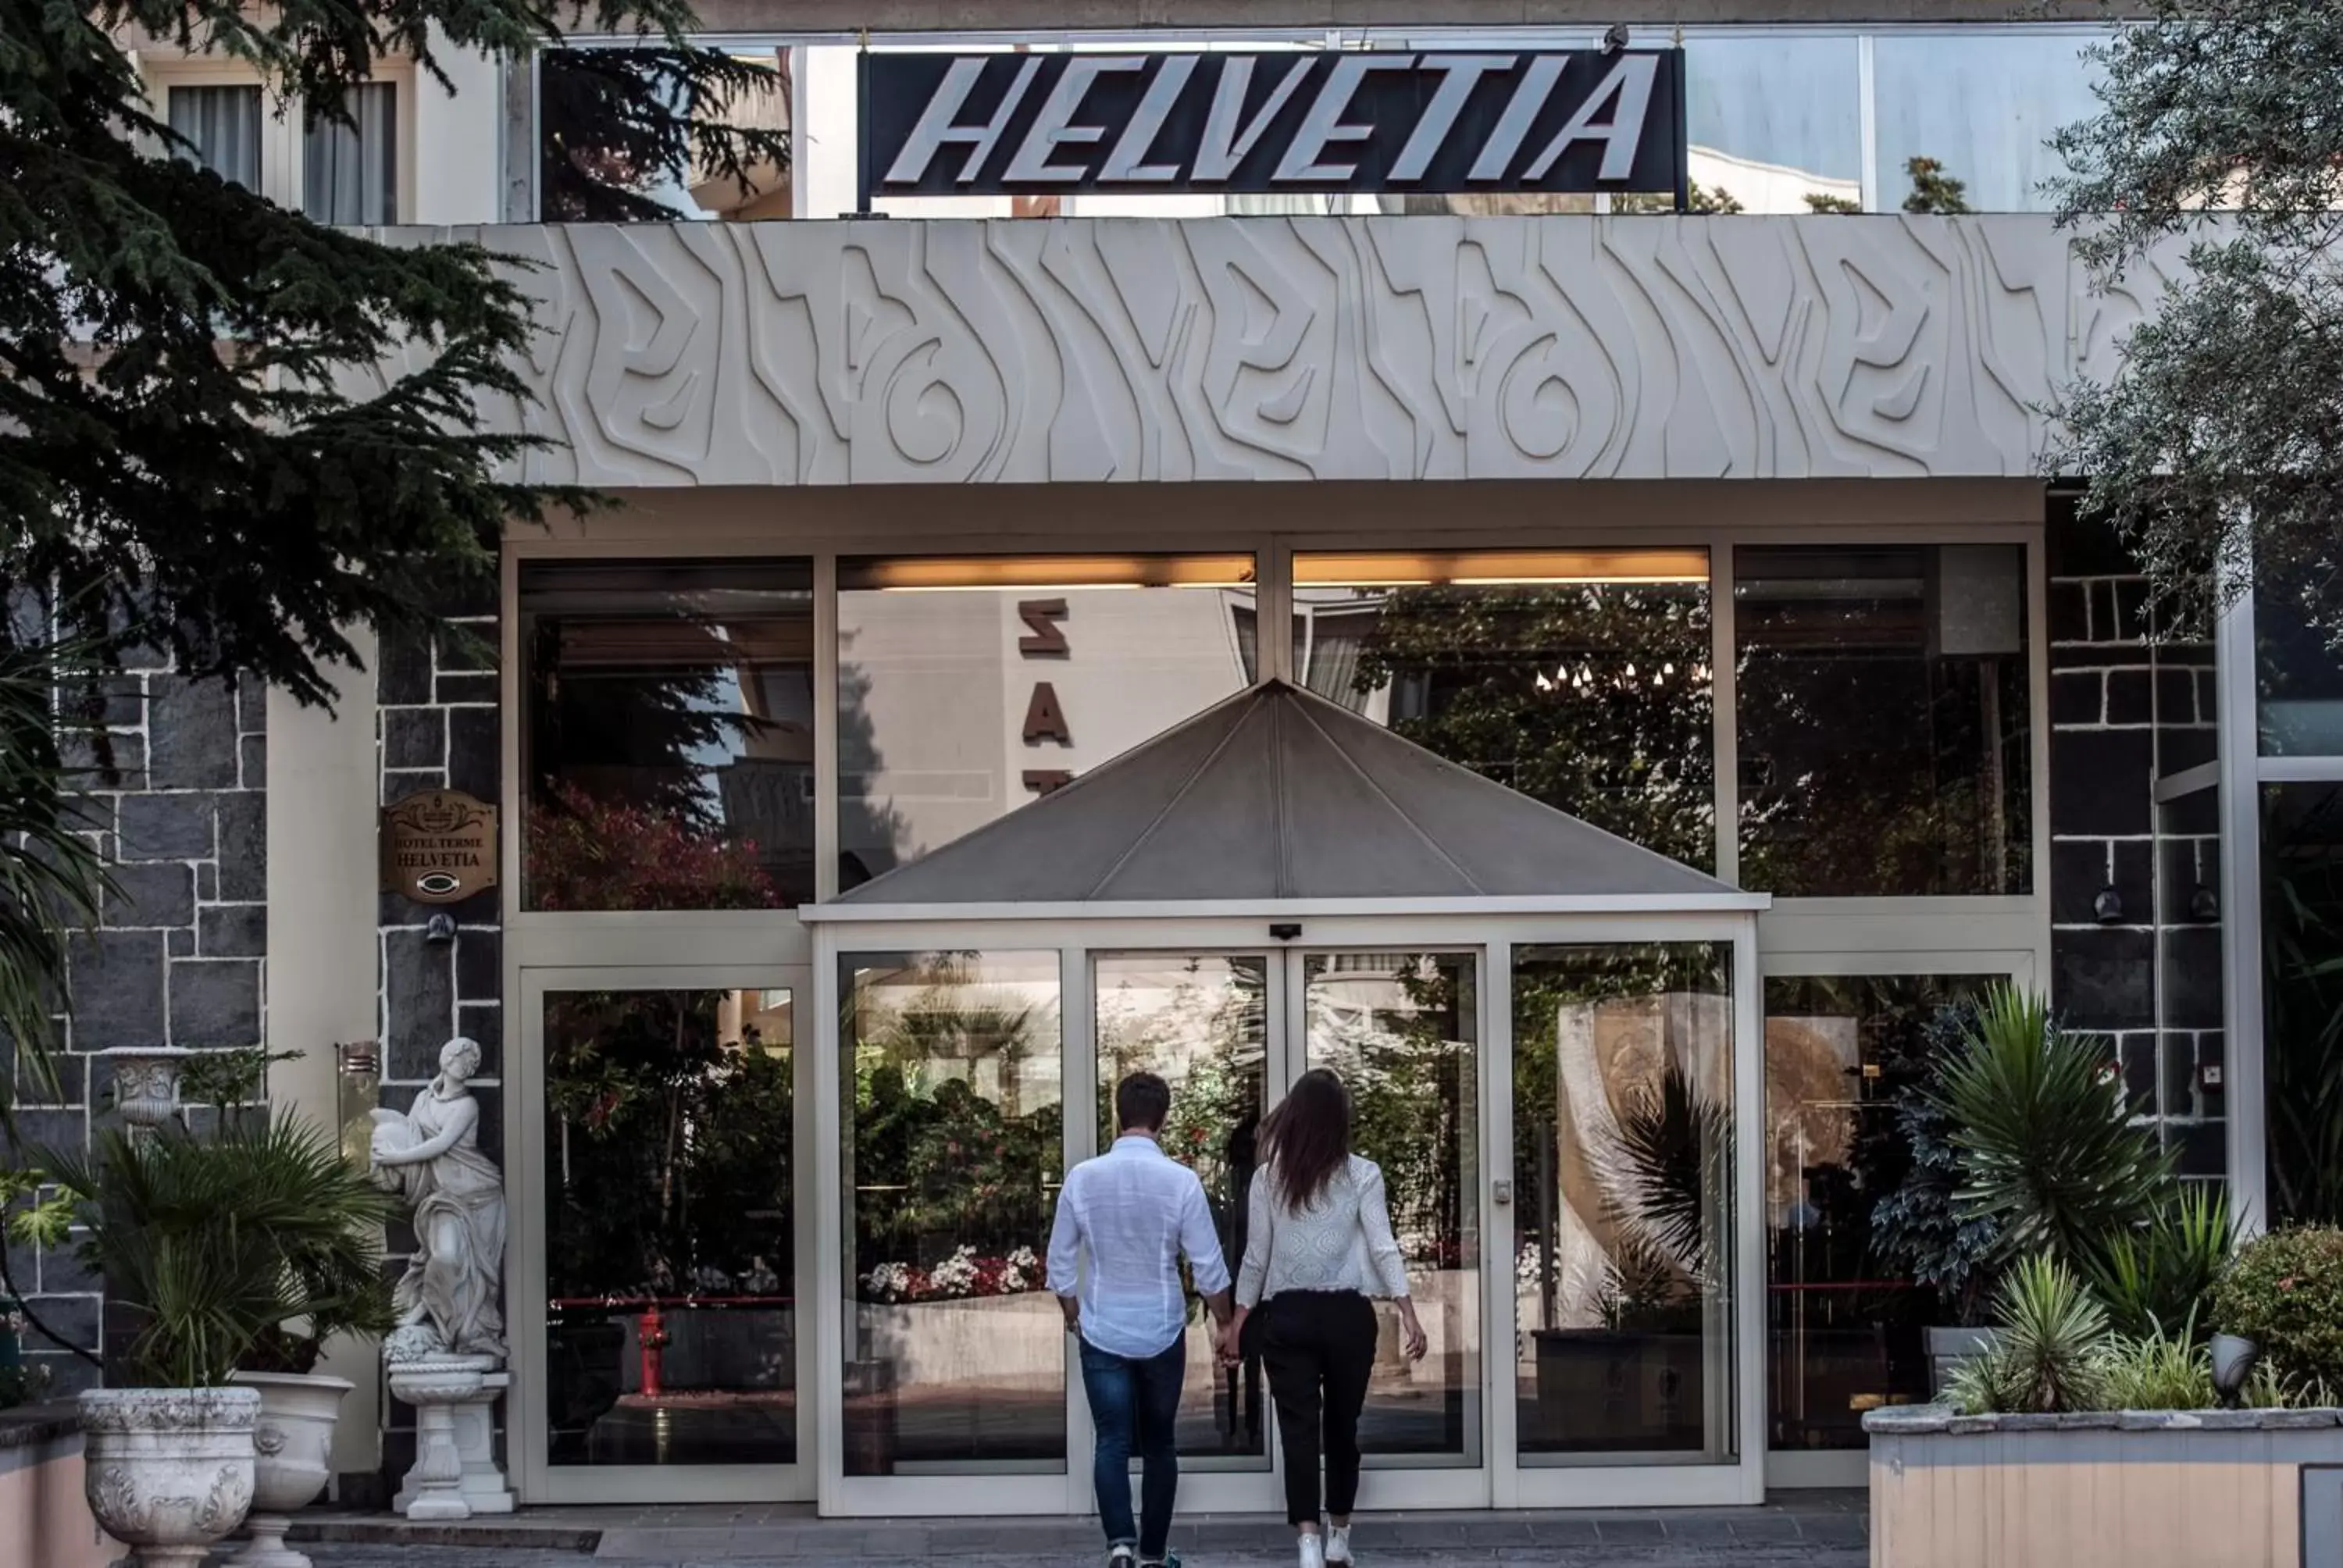 Facade/entrance in Hotel Terme Helvetia